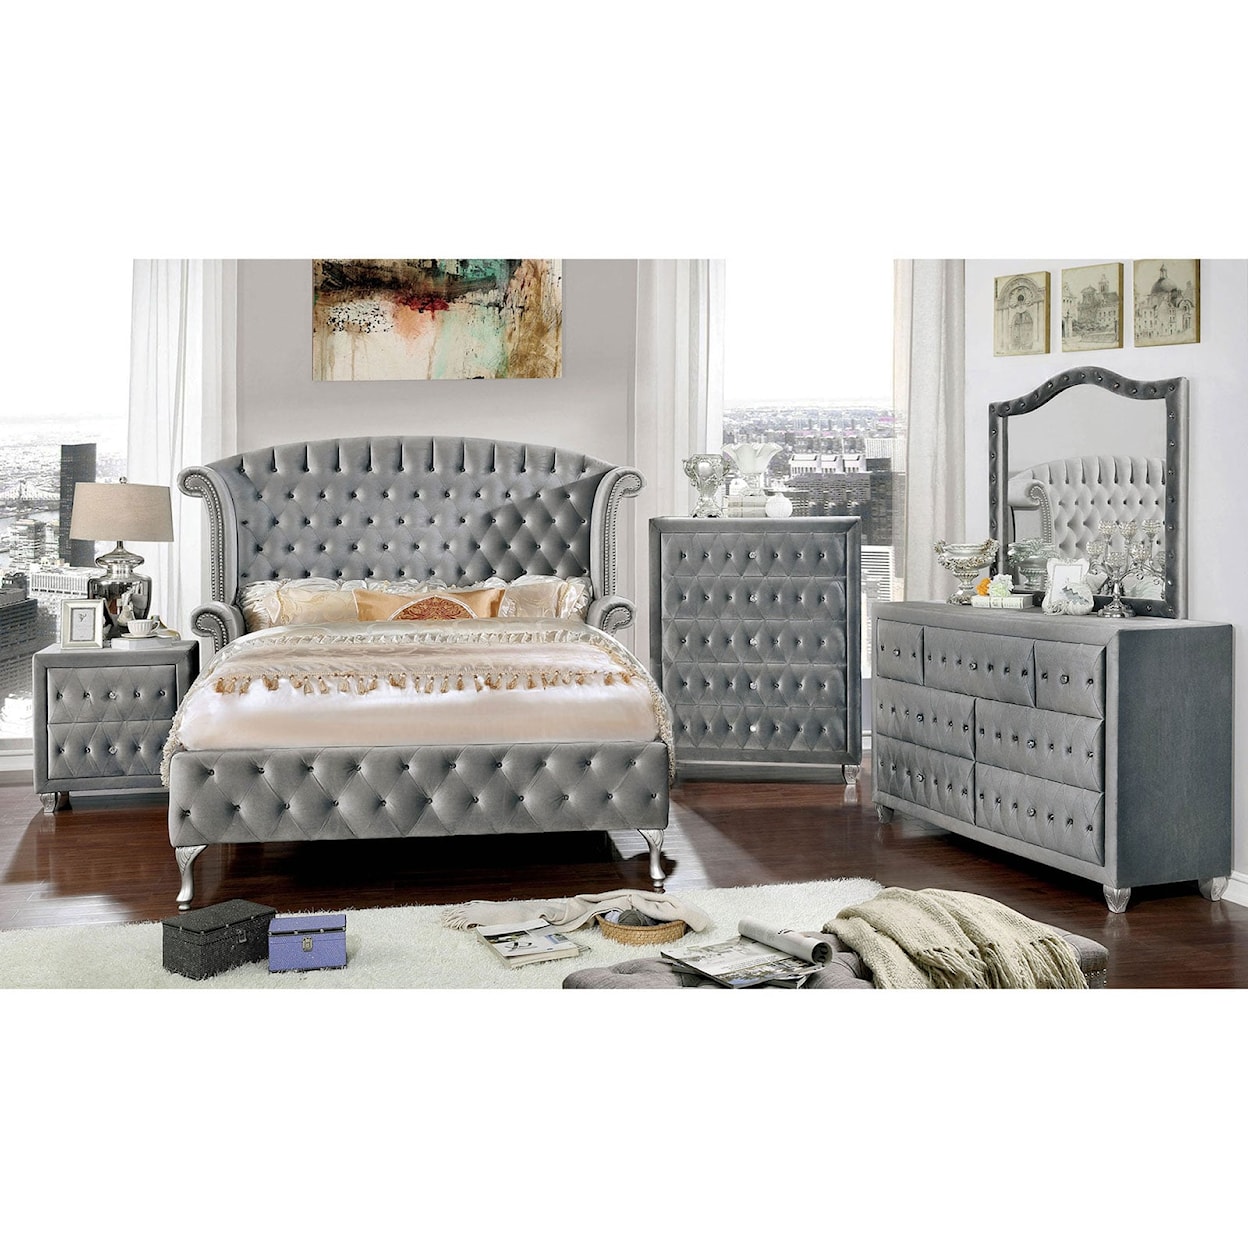 Furniture of America Alzir 4 Pc. Queen Bedroom Set